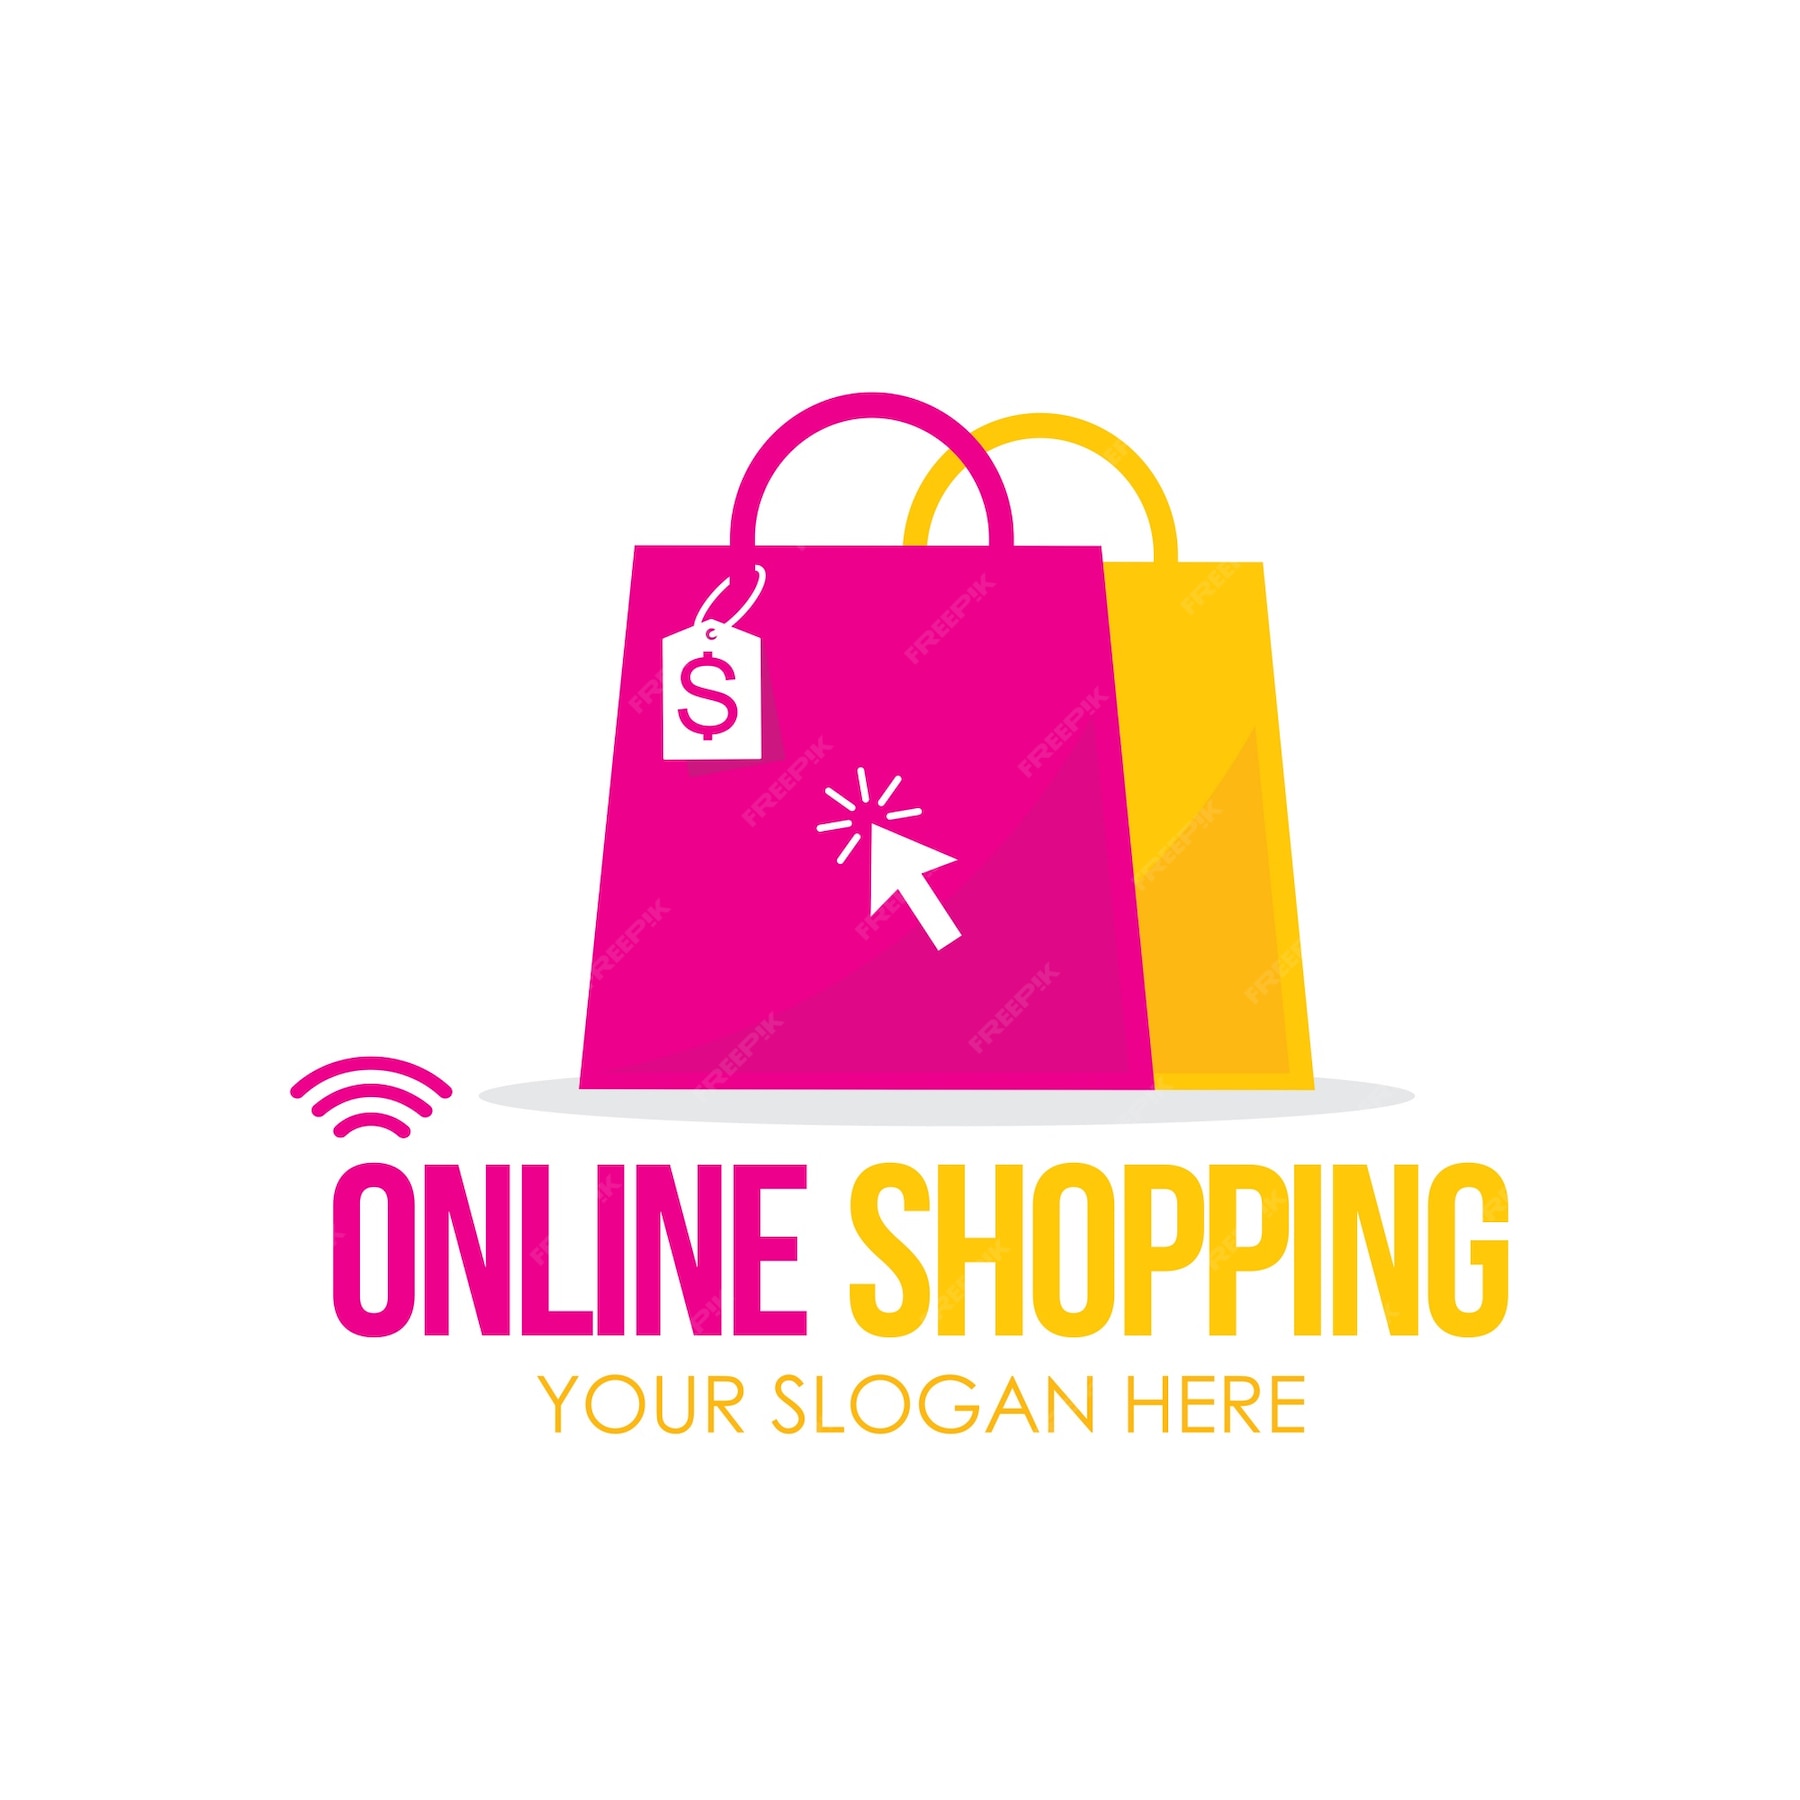 Logos shop ru. Логотип интернет магазина. Эмблема для интернет магазина. Доготипдля интернет магазина. Эмблема интернет магазина одежды.